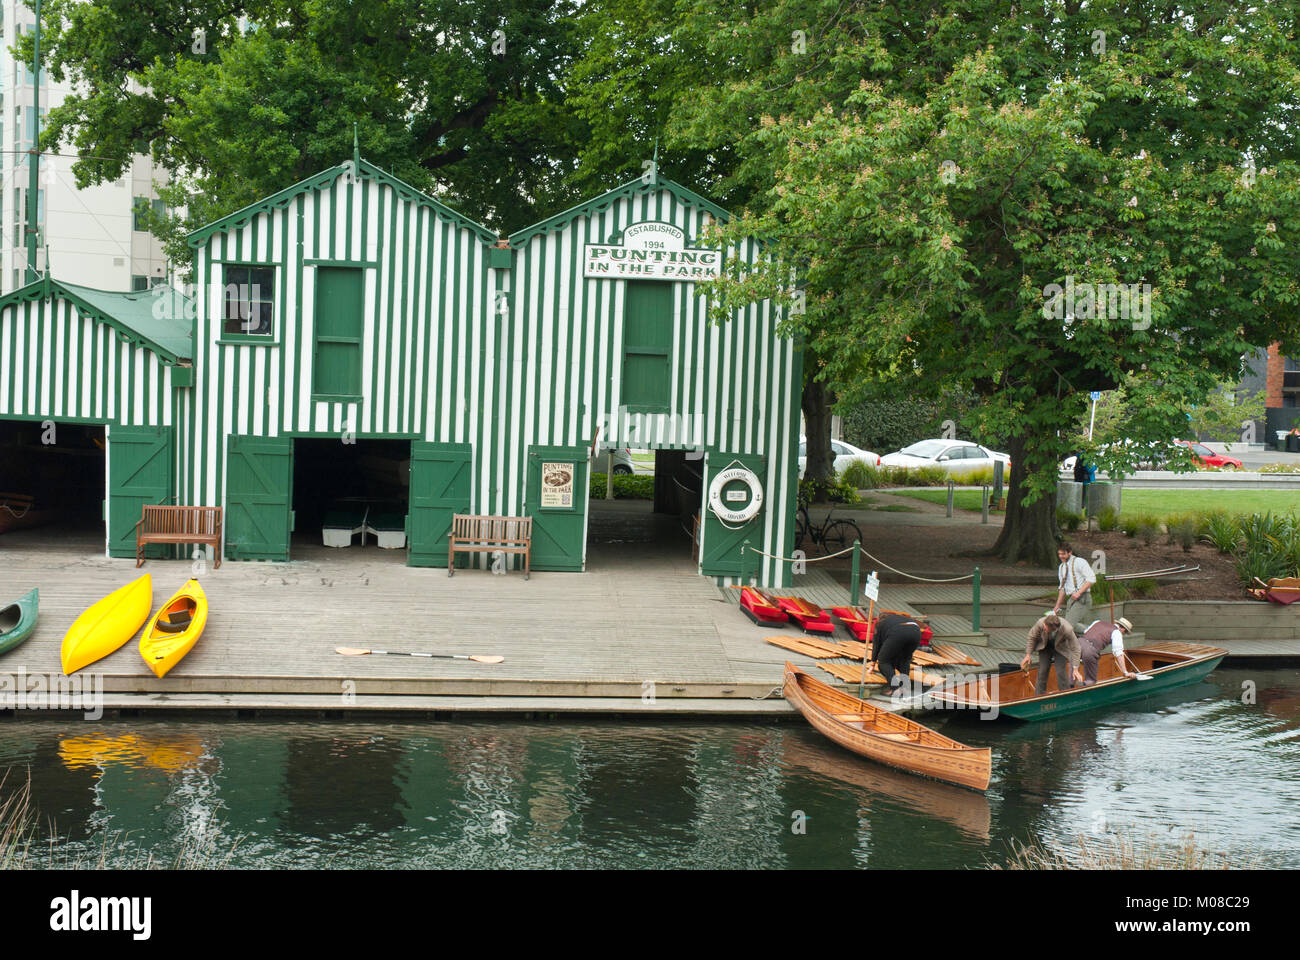 L'historique Bateau Antigua apporte sur la rivière Avon, avec plates, canoës et riverside. Christchurch, Nouvelle-Zélande. Banque D'Images